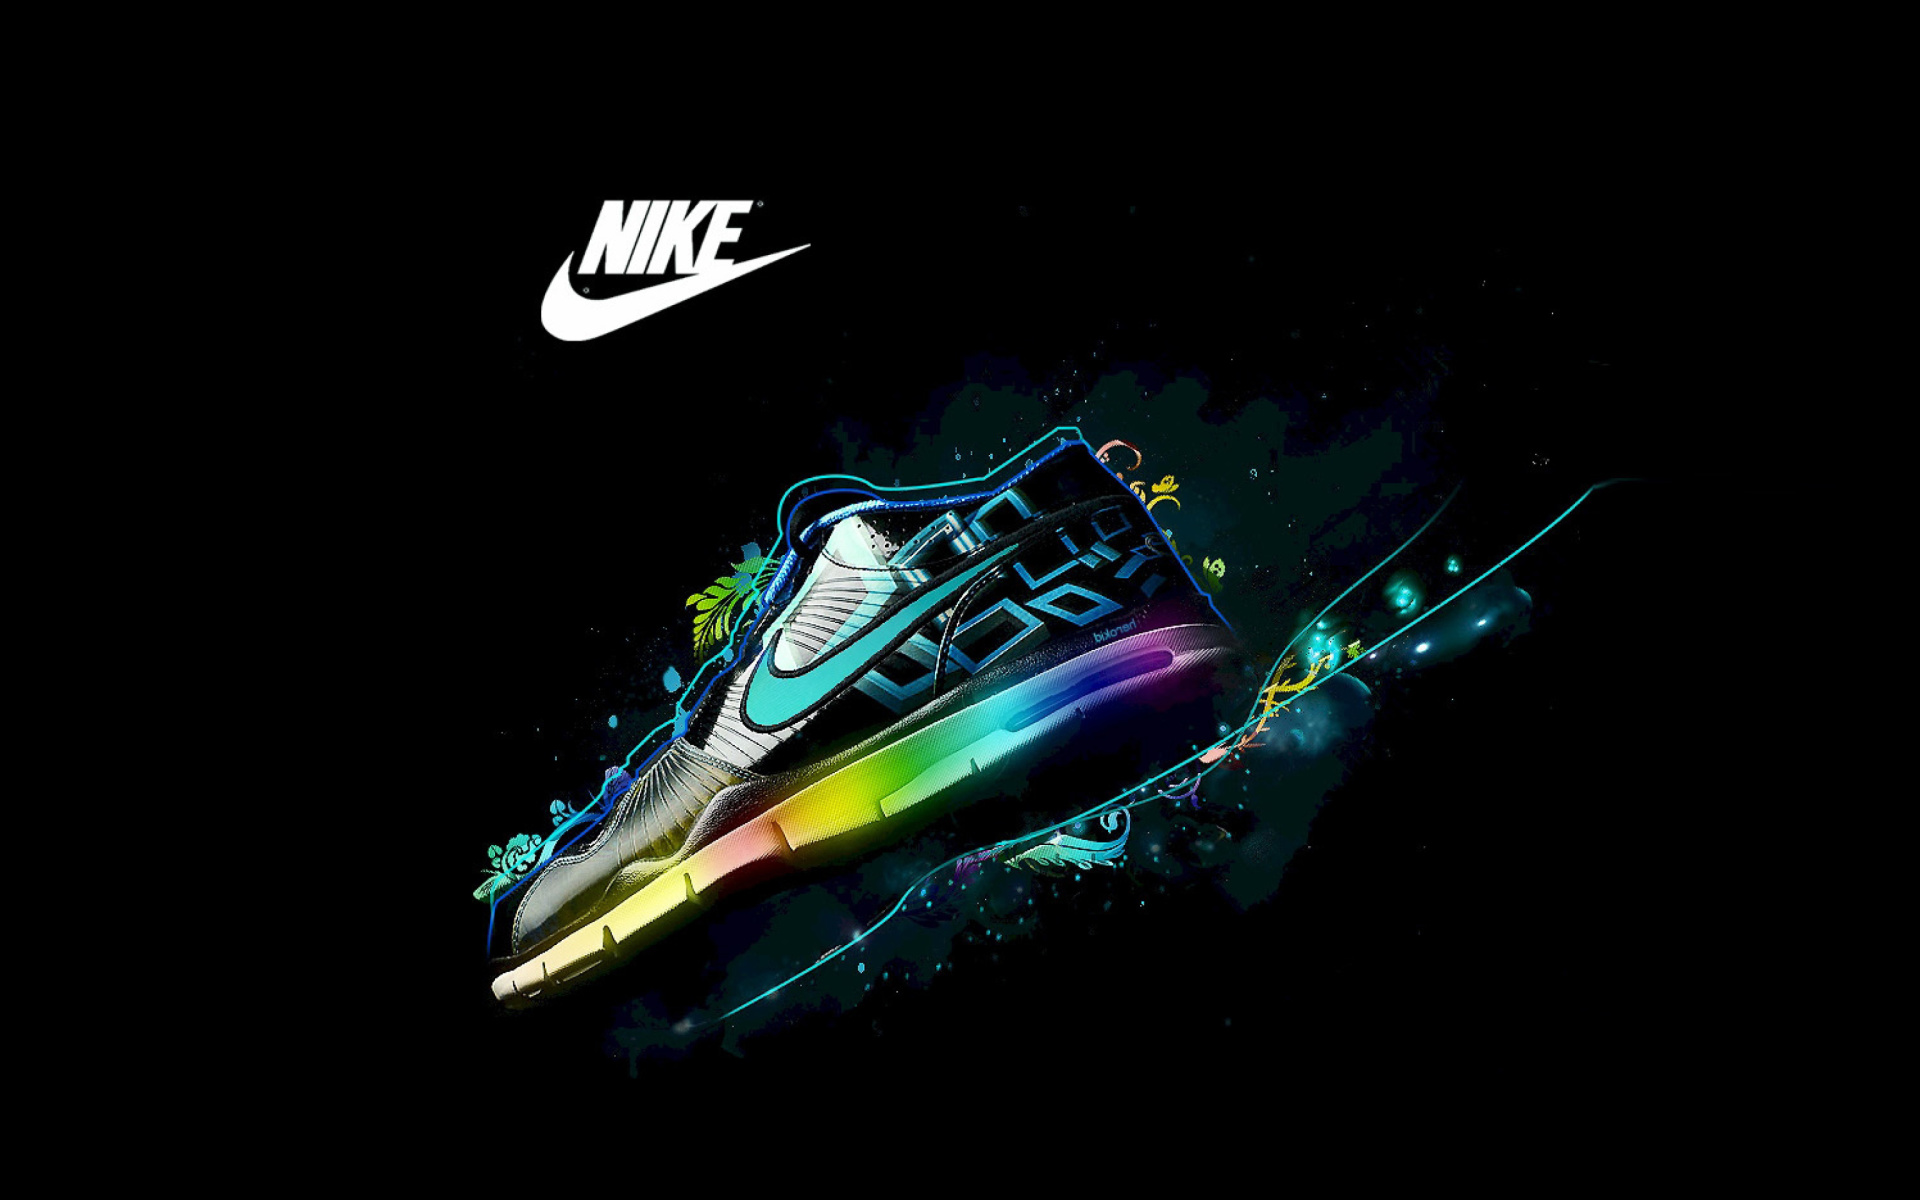 Das Nike Logo and Nike Air Shoes Wallpaper 1920x1200